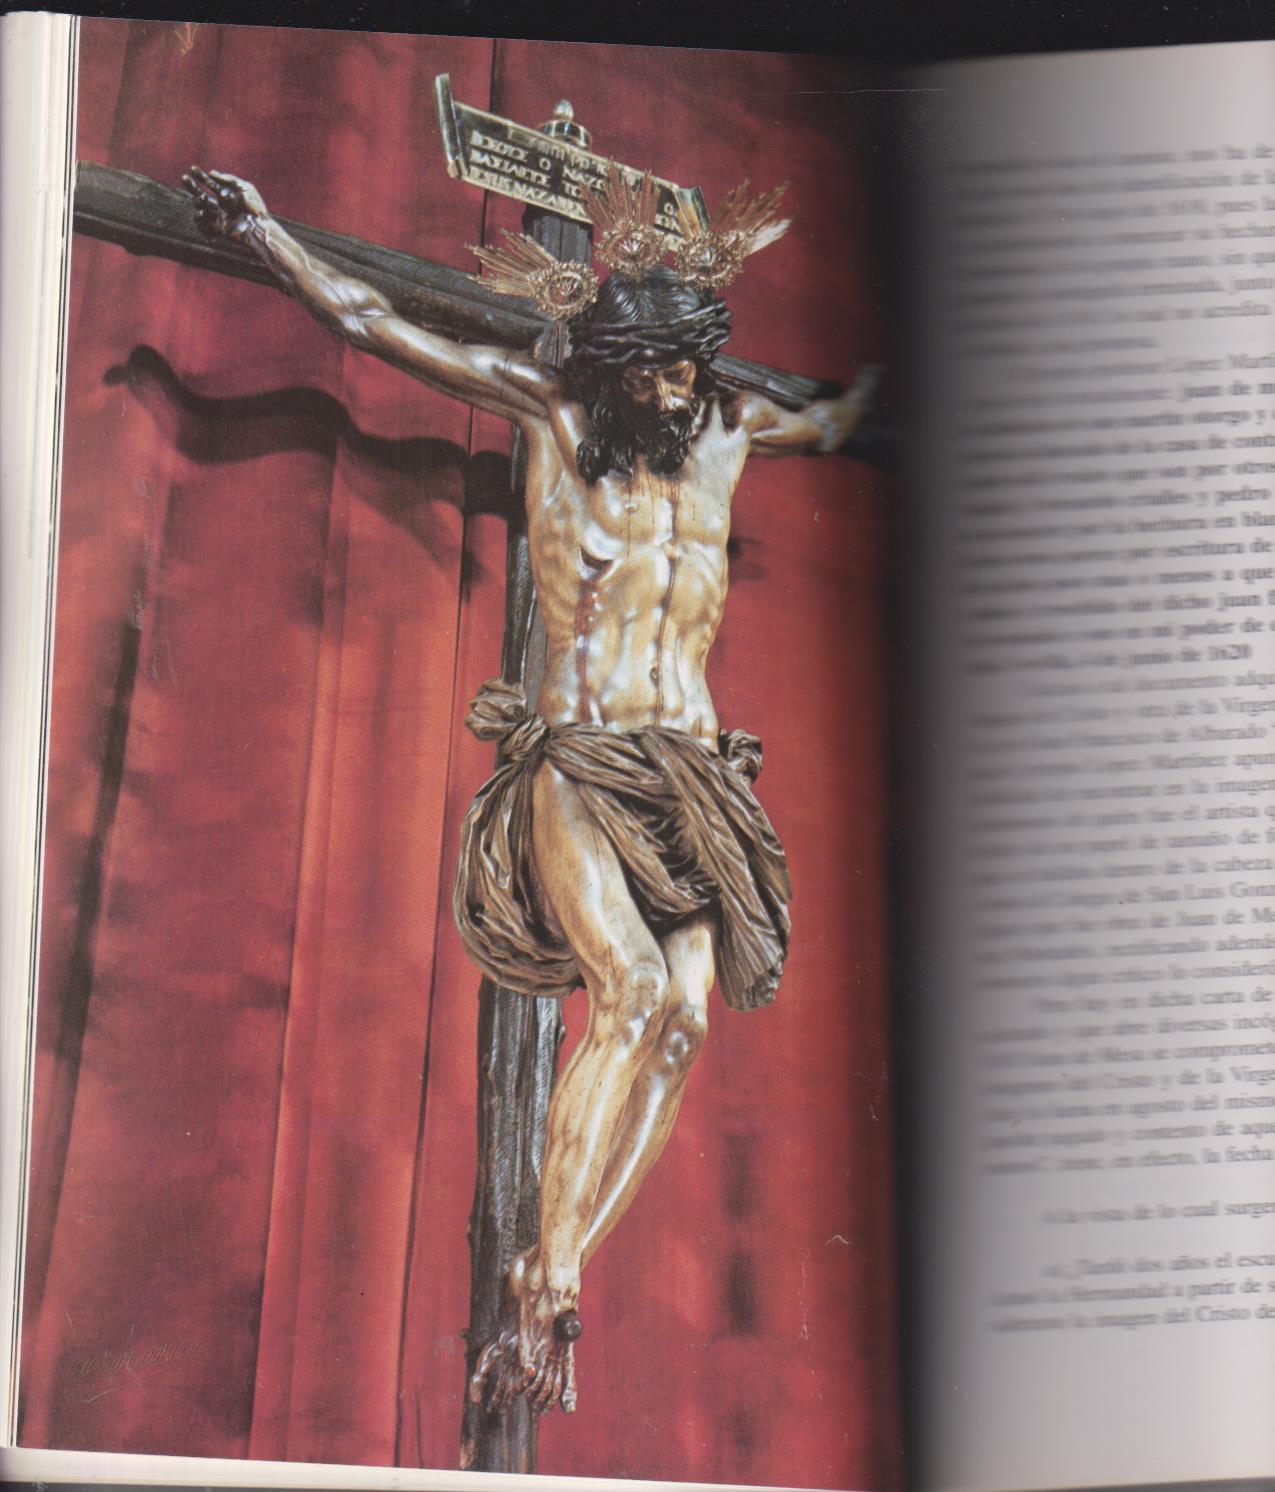 El Cristo del Amor y su Archicofradía. Gráficas San Antonio. Sevilla 1998